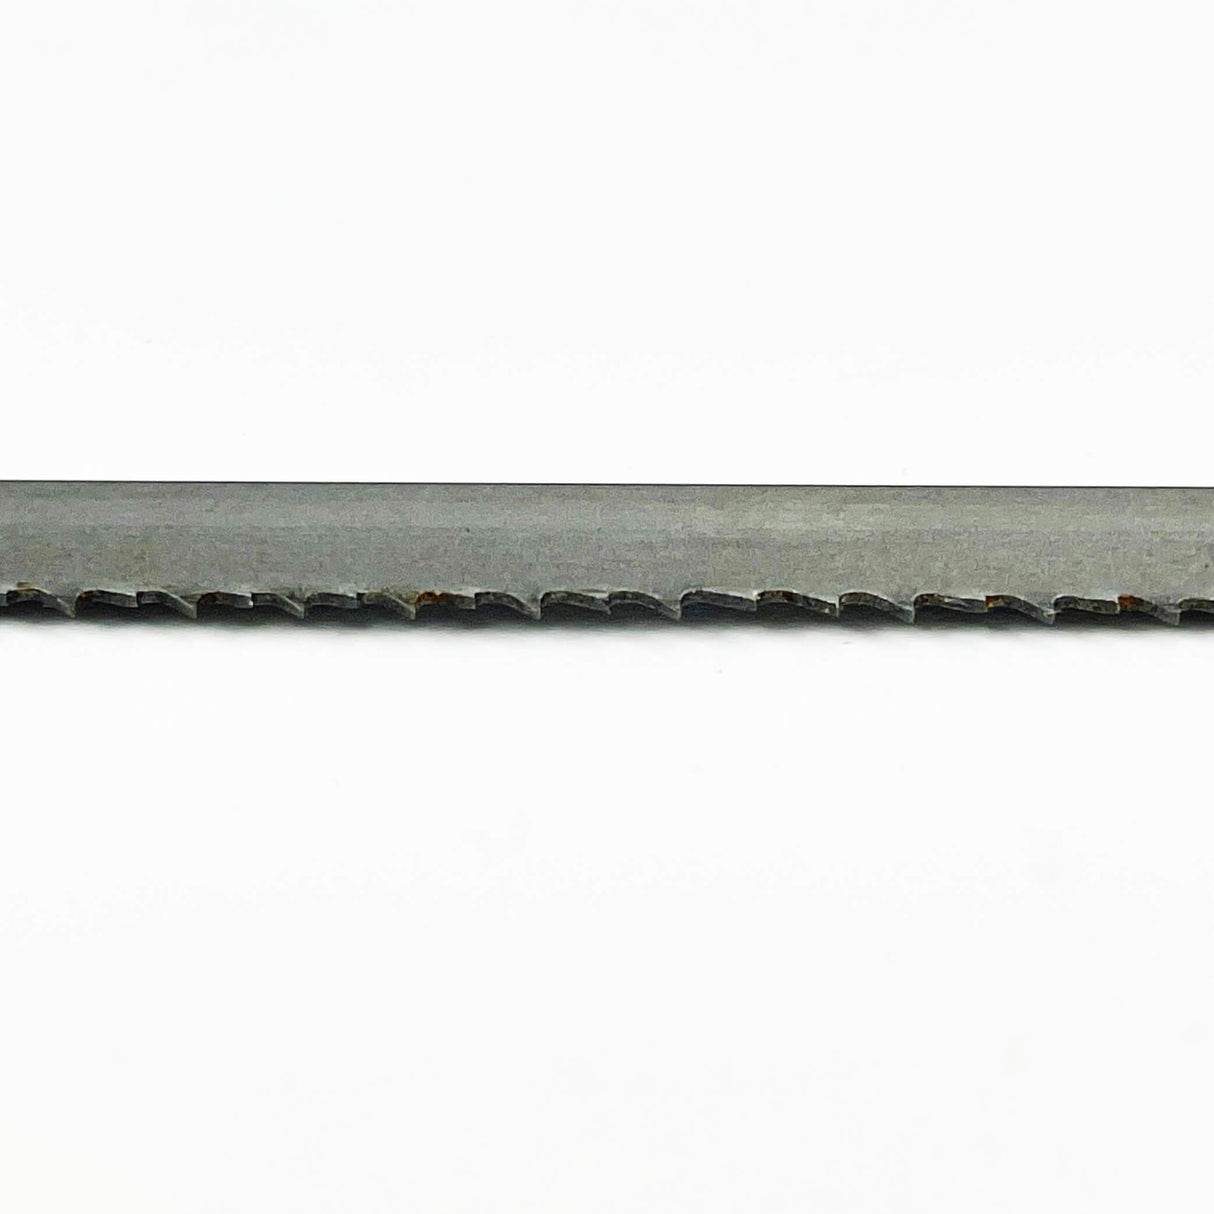 Sega a nastro bimetallica COBALT M42 da 3.510 mm di lunghezza x 13 mm di larghezza – Confezione da 2 lame